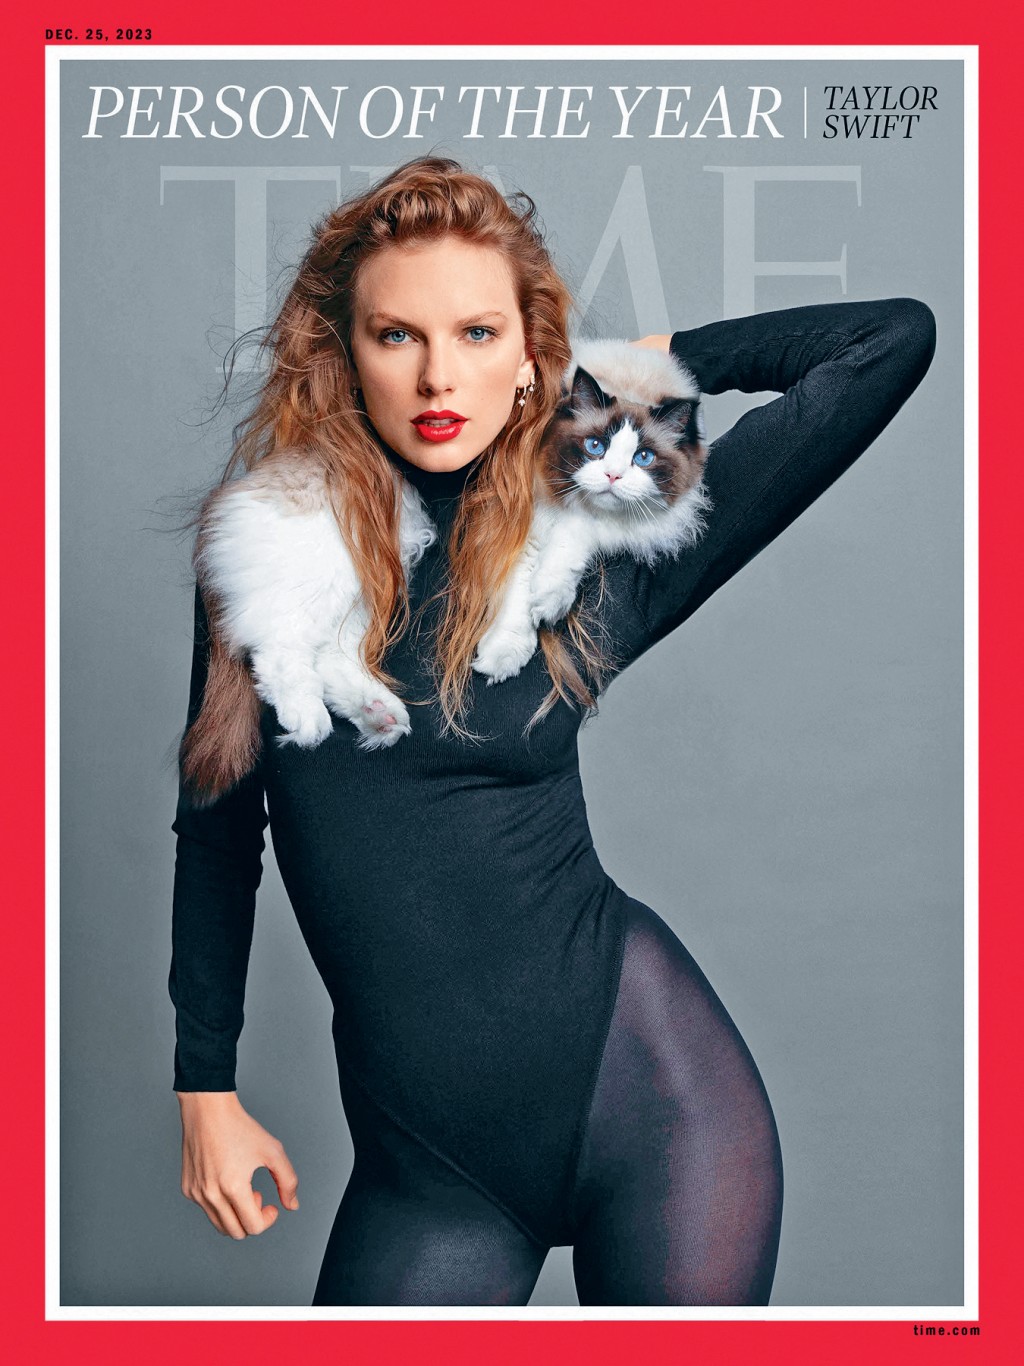 Taylor Swift偕同爱猫登上《时代》杂志封面。